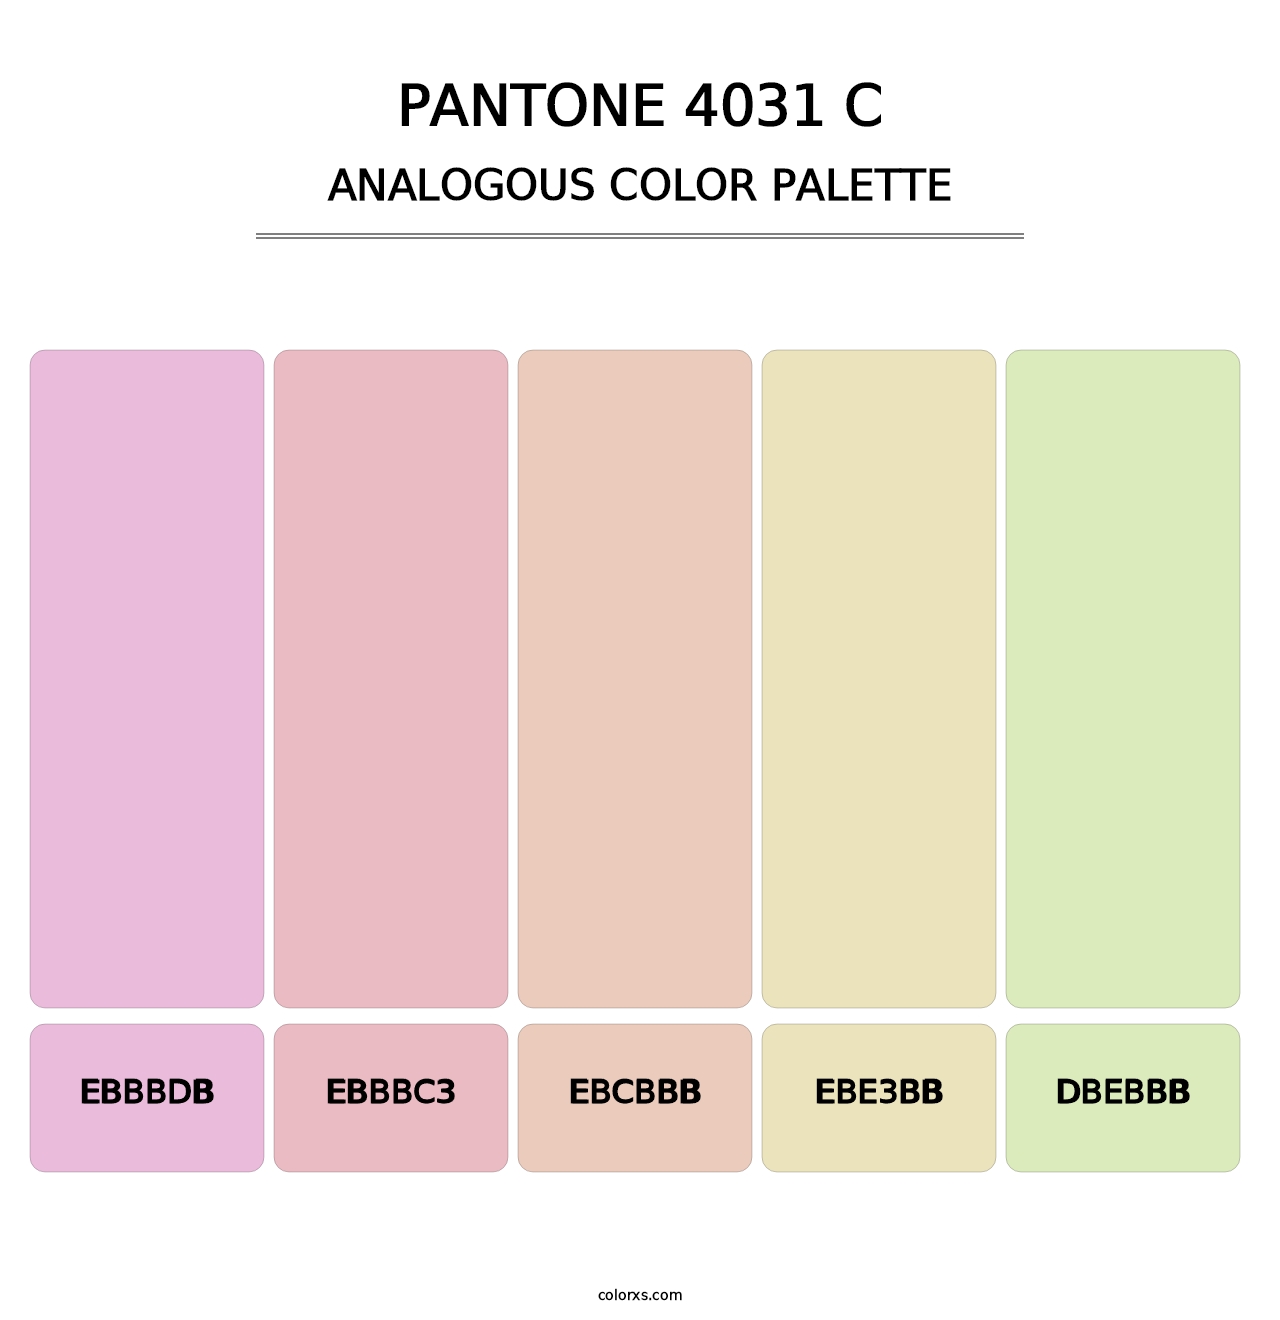 PANTONE 4031 C - Analogous Color Palette